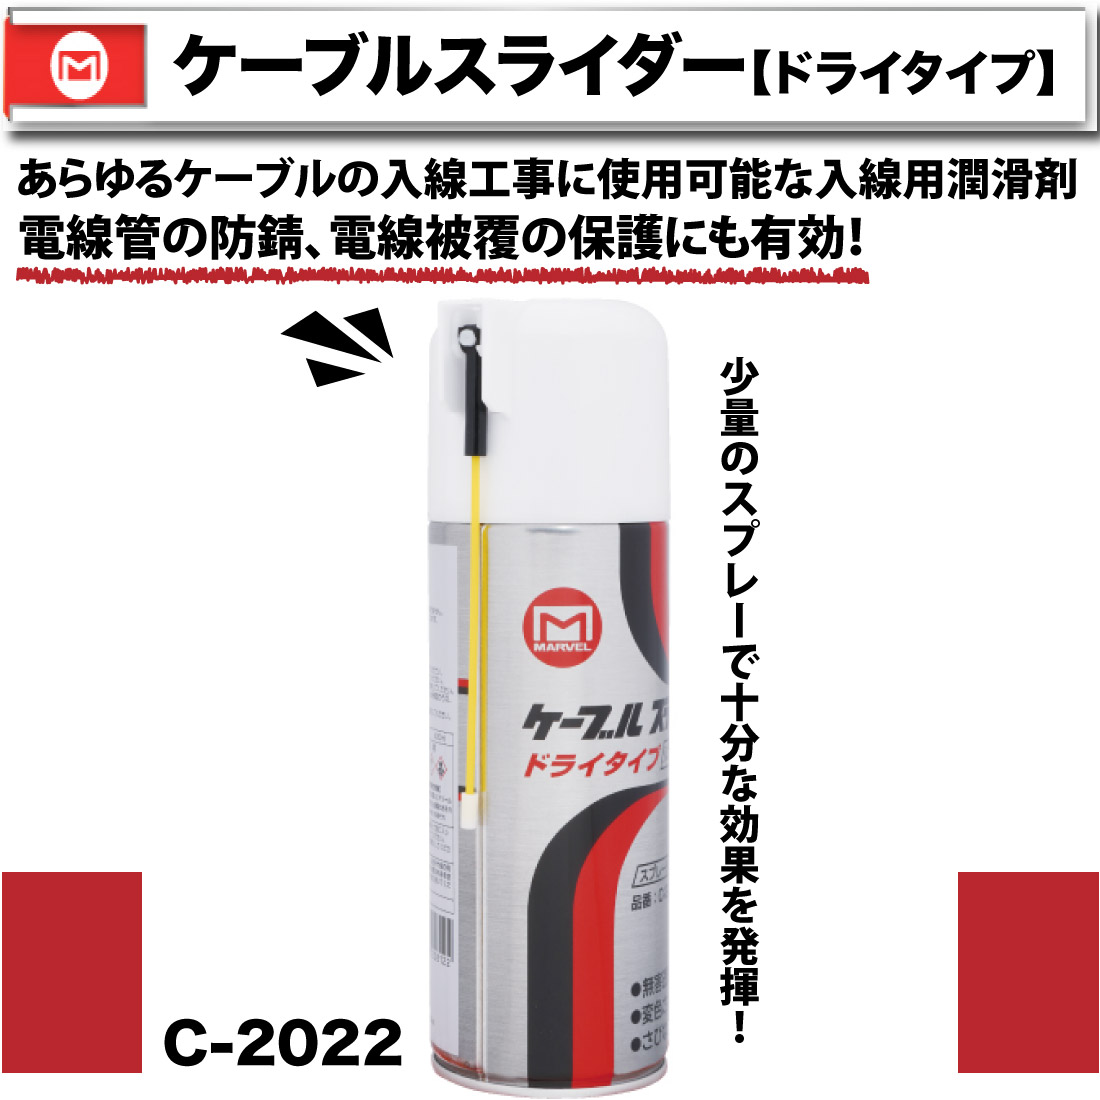 ケーブルスライダー (ドライタイプ) C-2022 通線・入線工具 入線潤滑剤